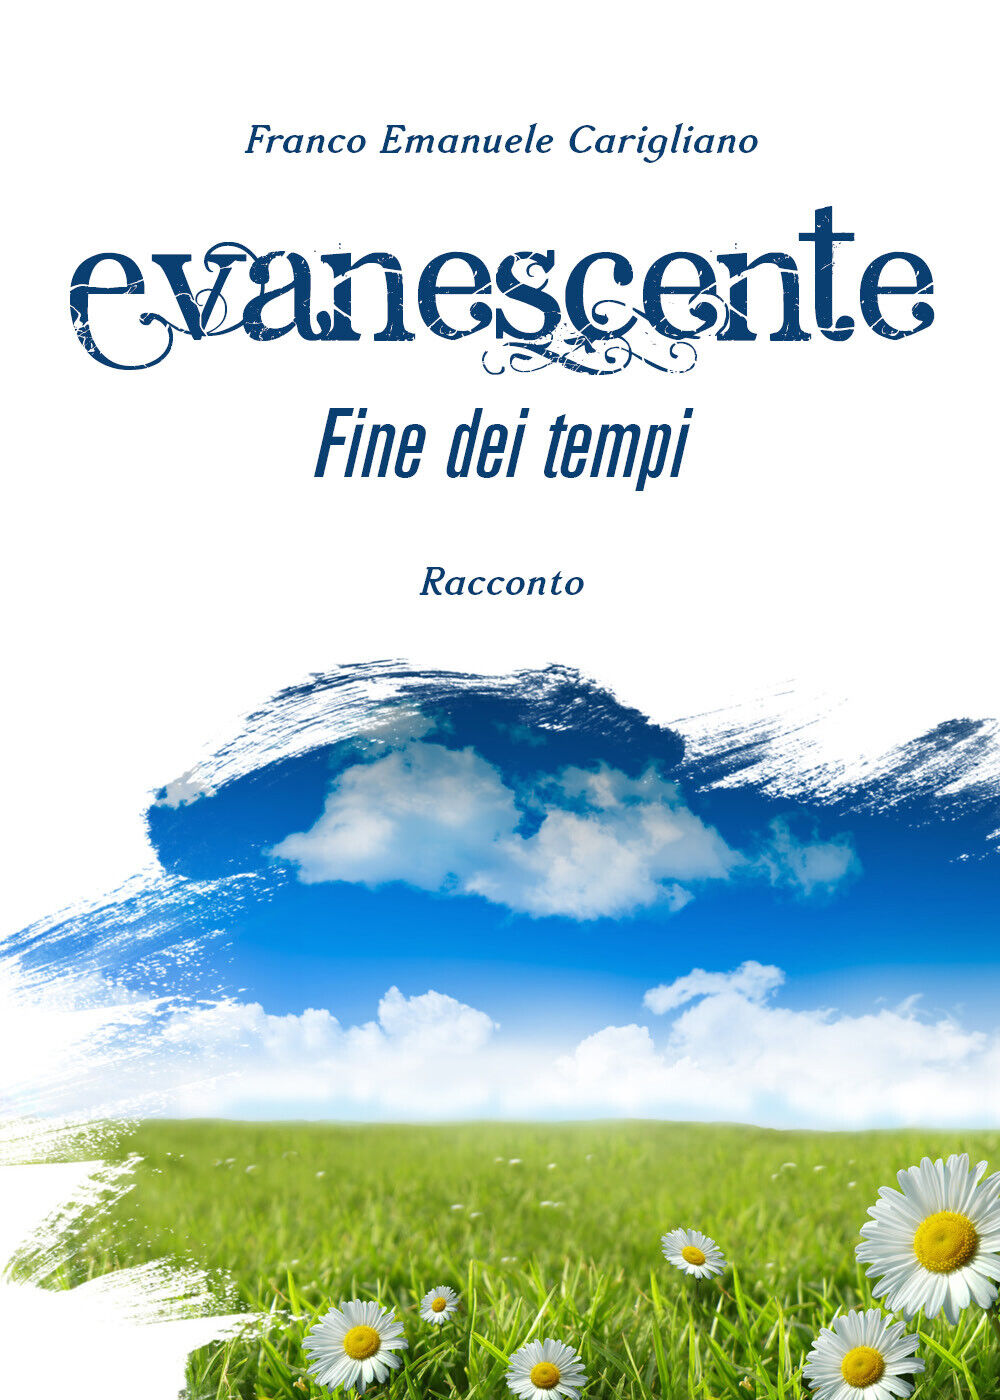 Evanescente fine dei tempi di Franco Emanuele Carigliano,  2019,  Youcanprint